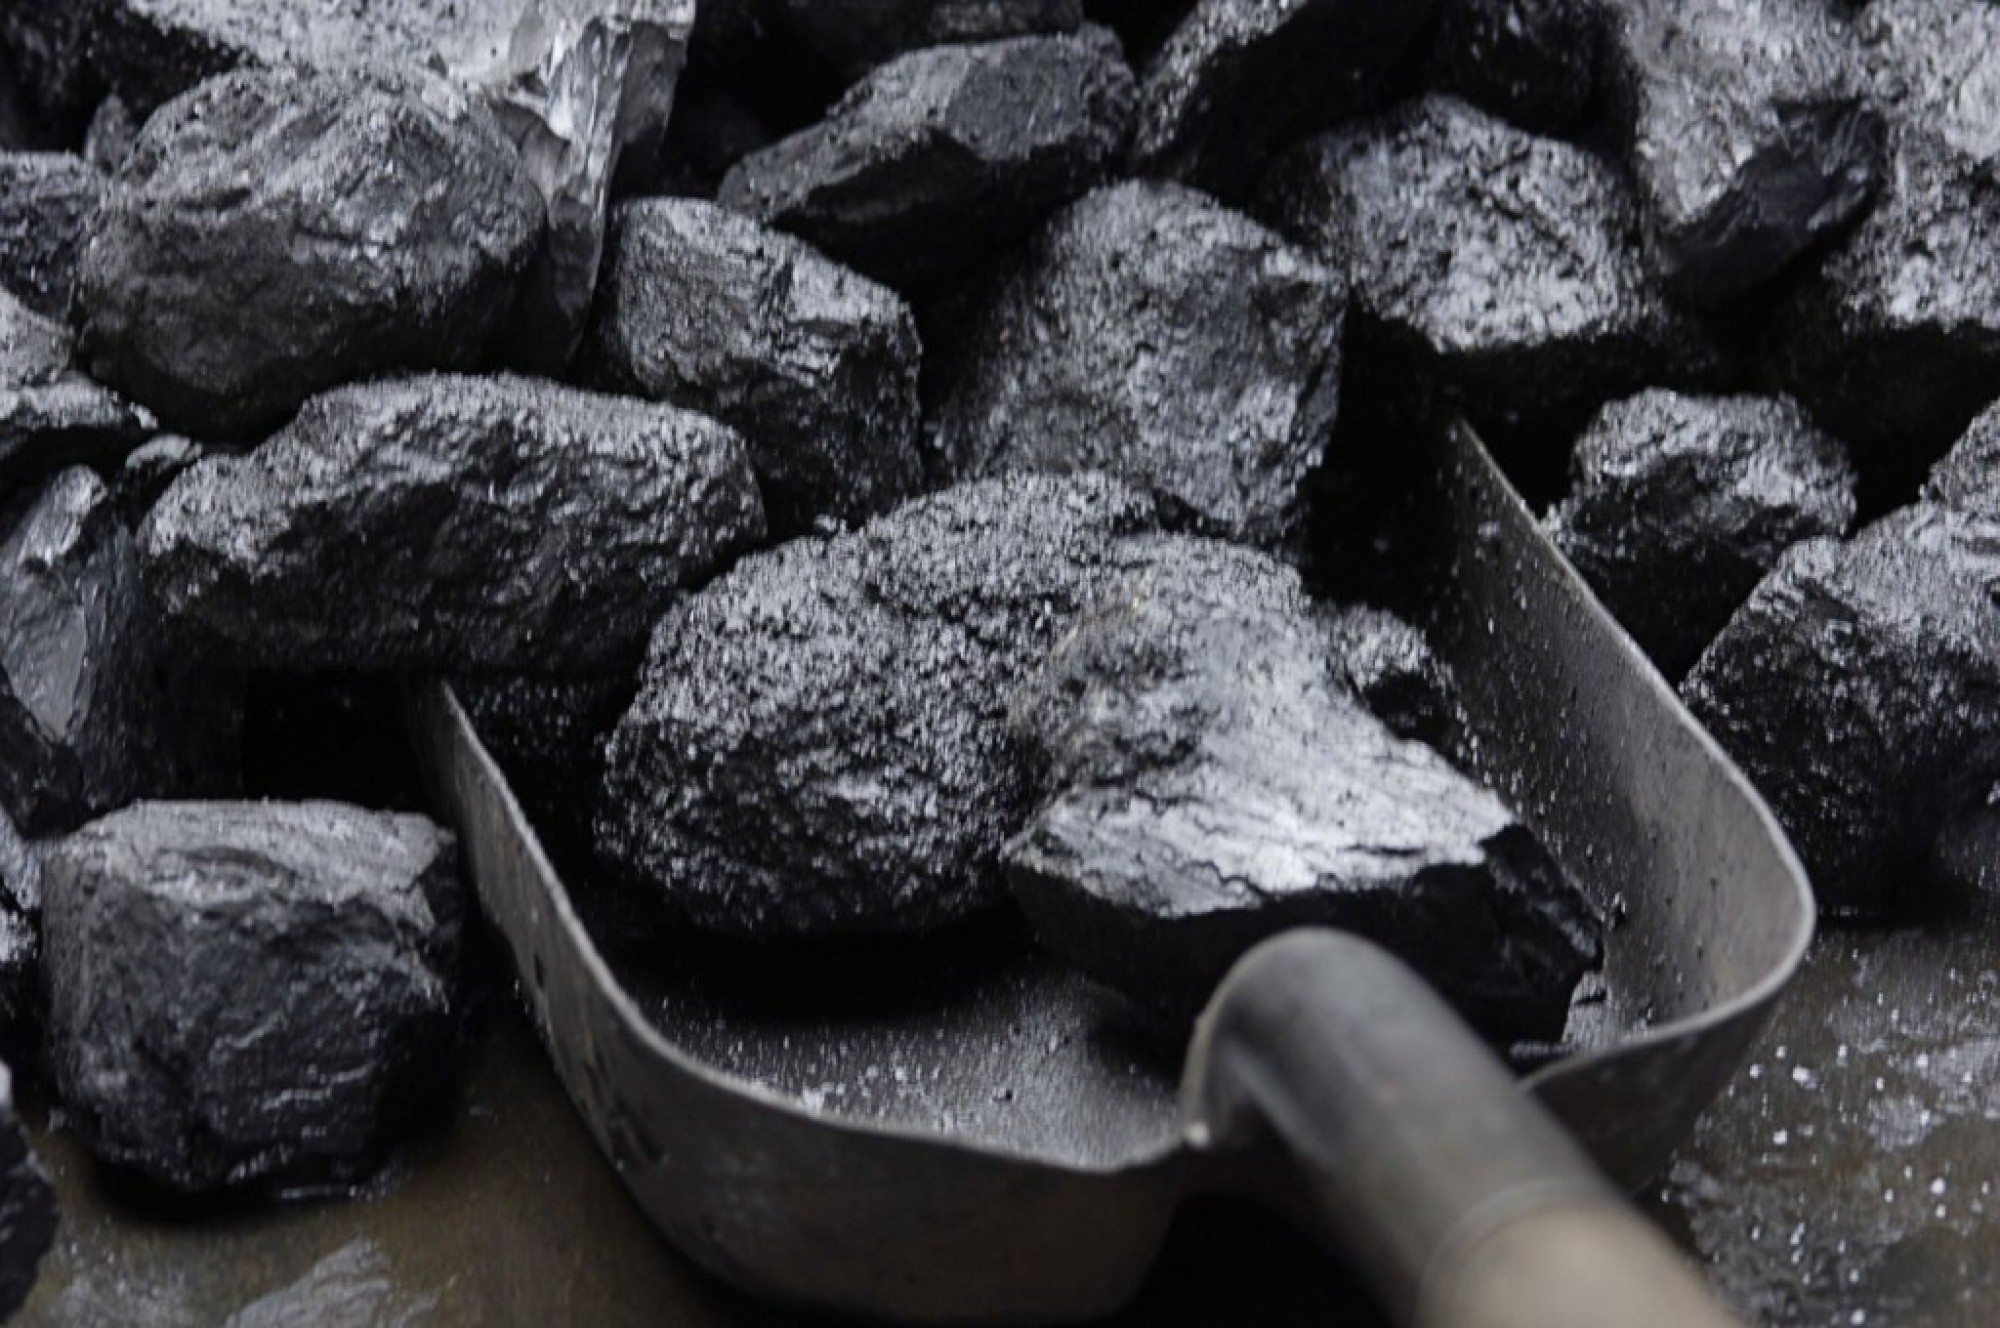 Каменный уголь для получения металлов. Уголь бурый каменный антрацит. Уголь марки ДГ. Битуминозный каменный уголь. Уголь фото.